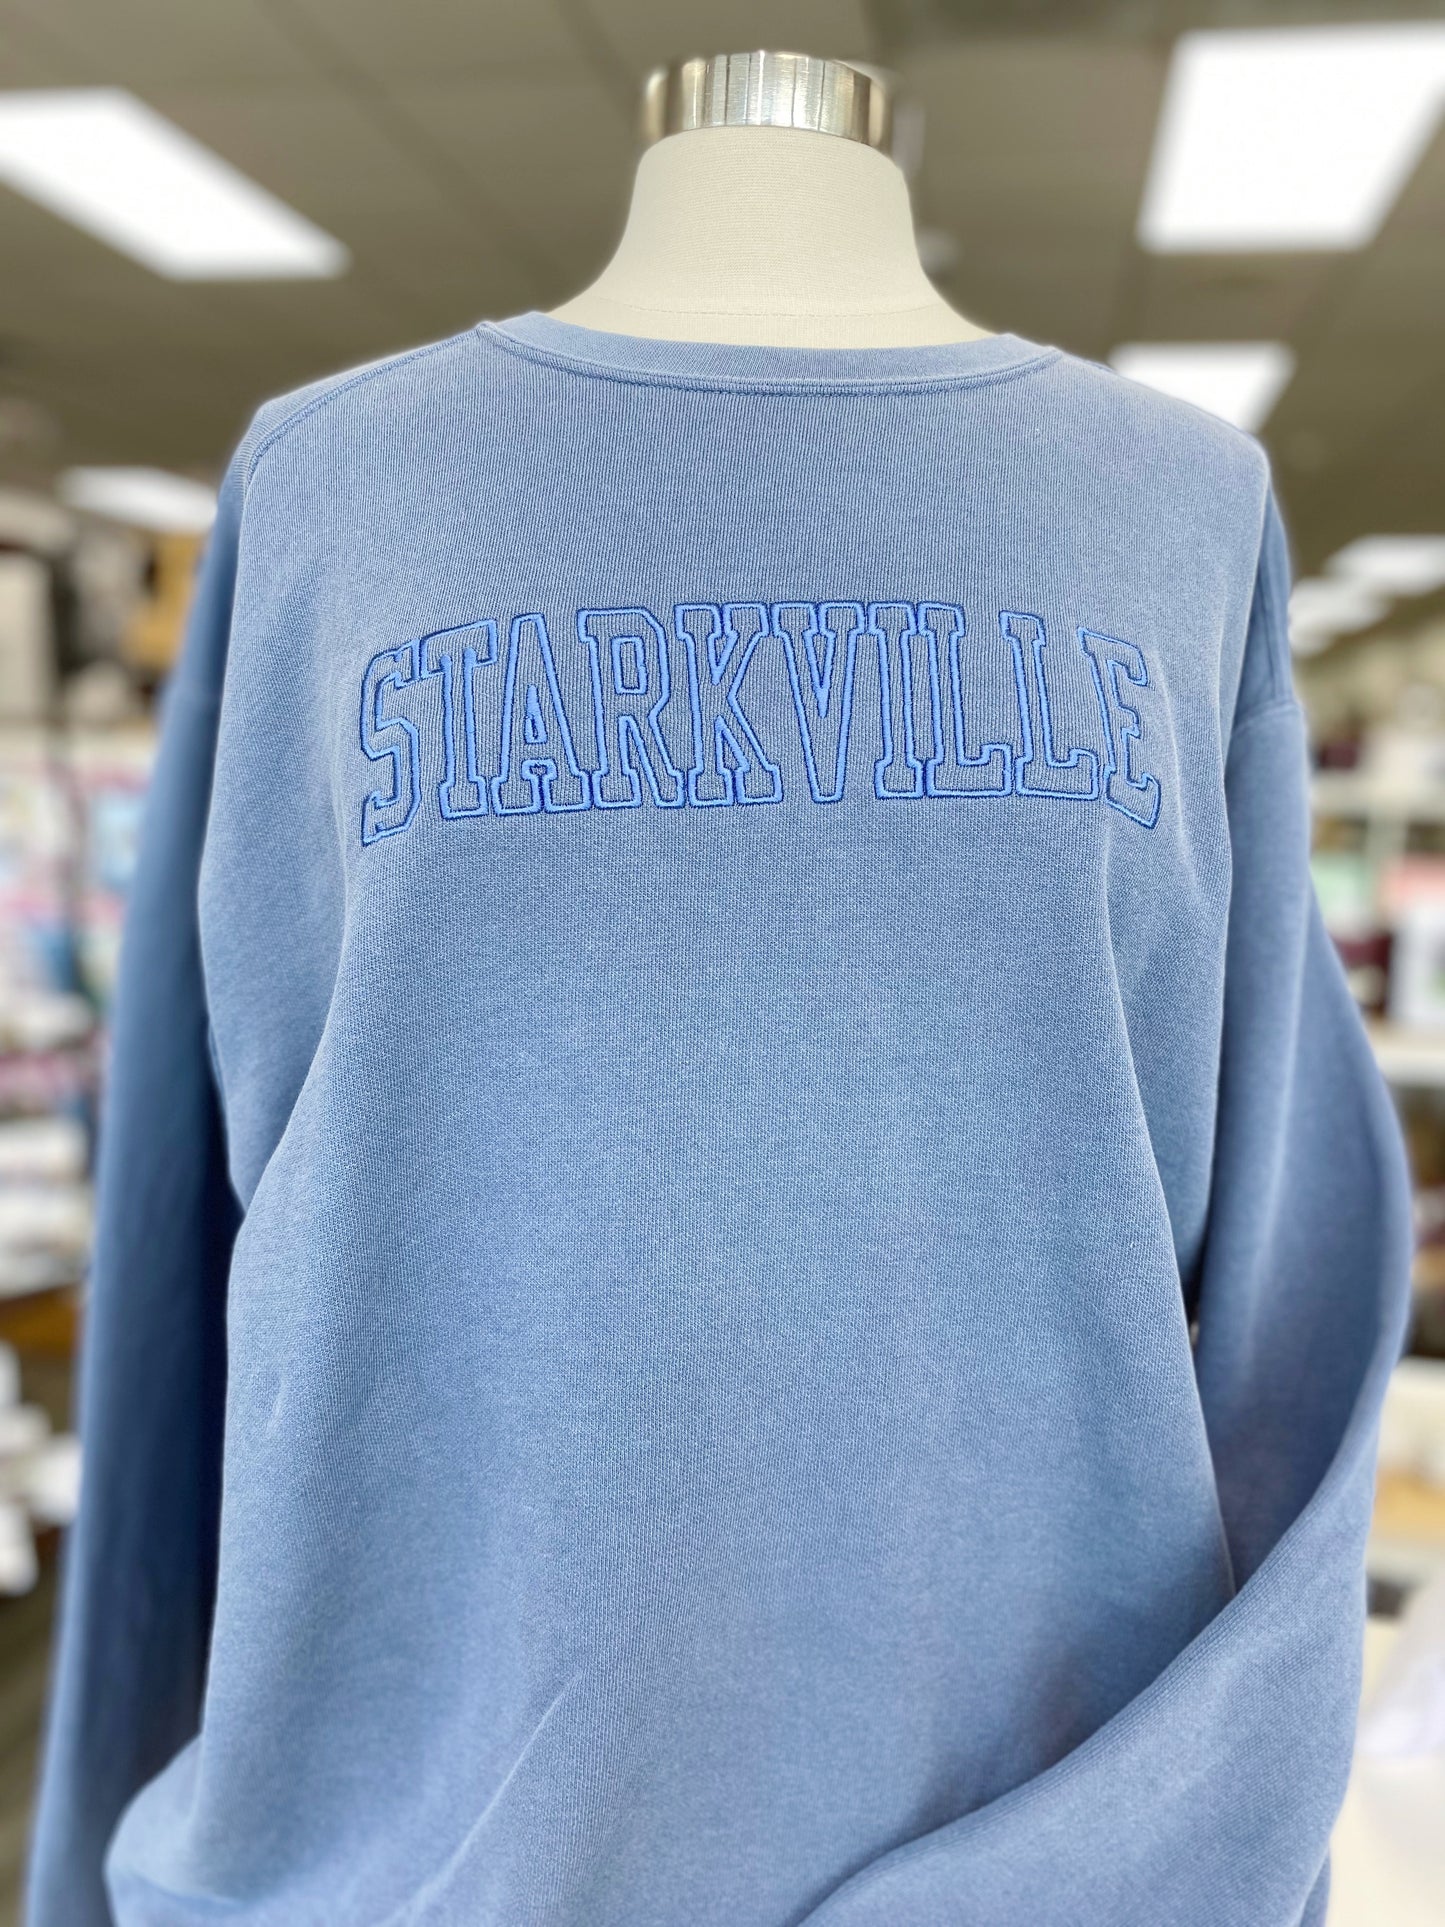 Starkville Monochrome Sweatshirt